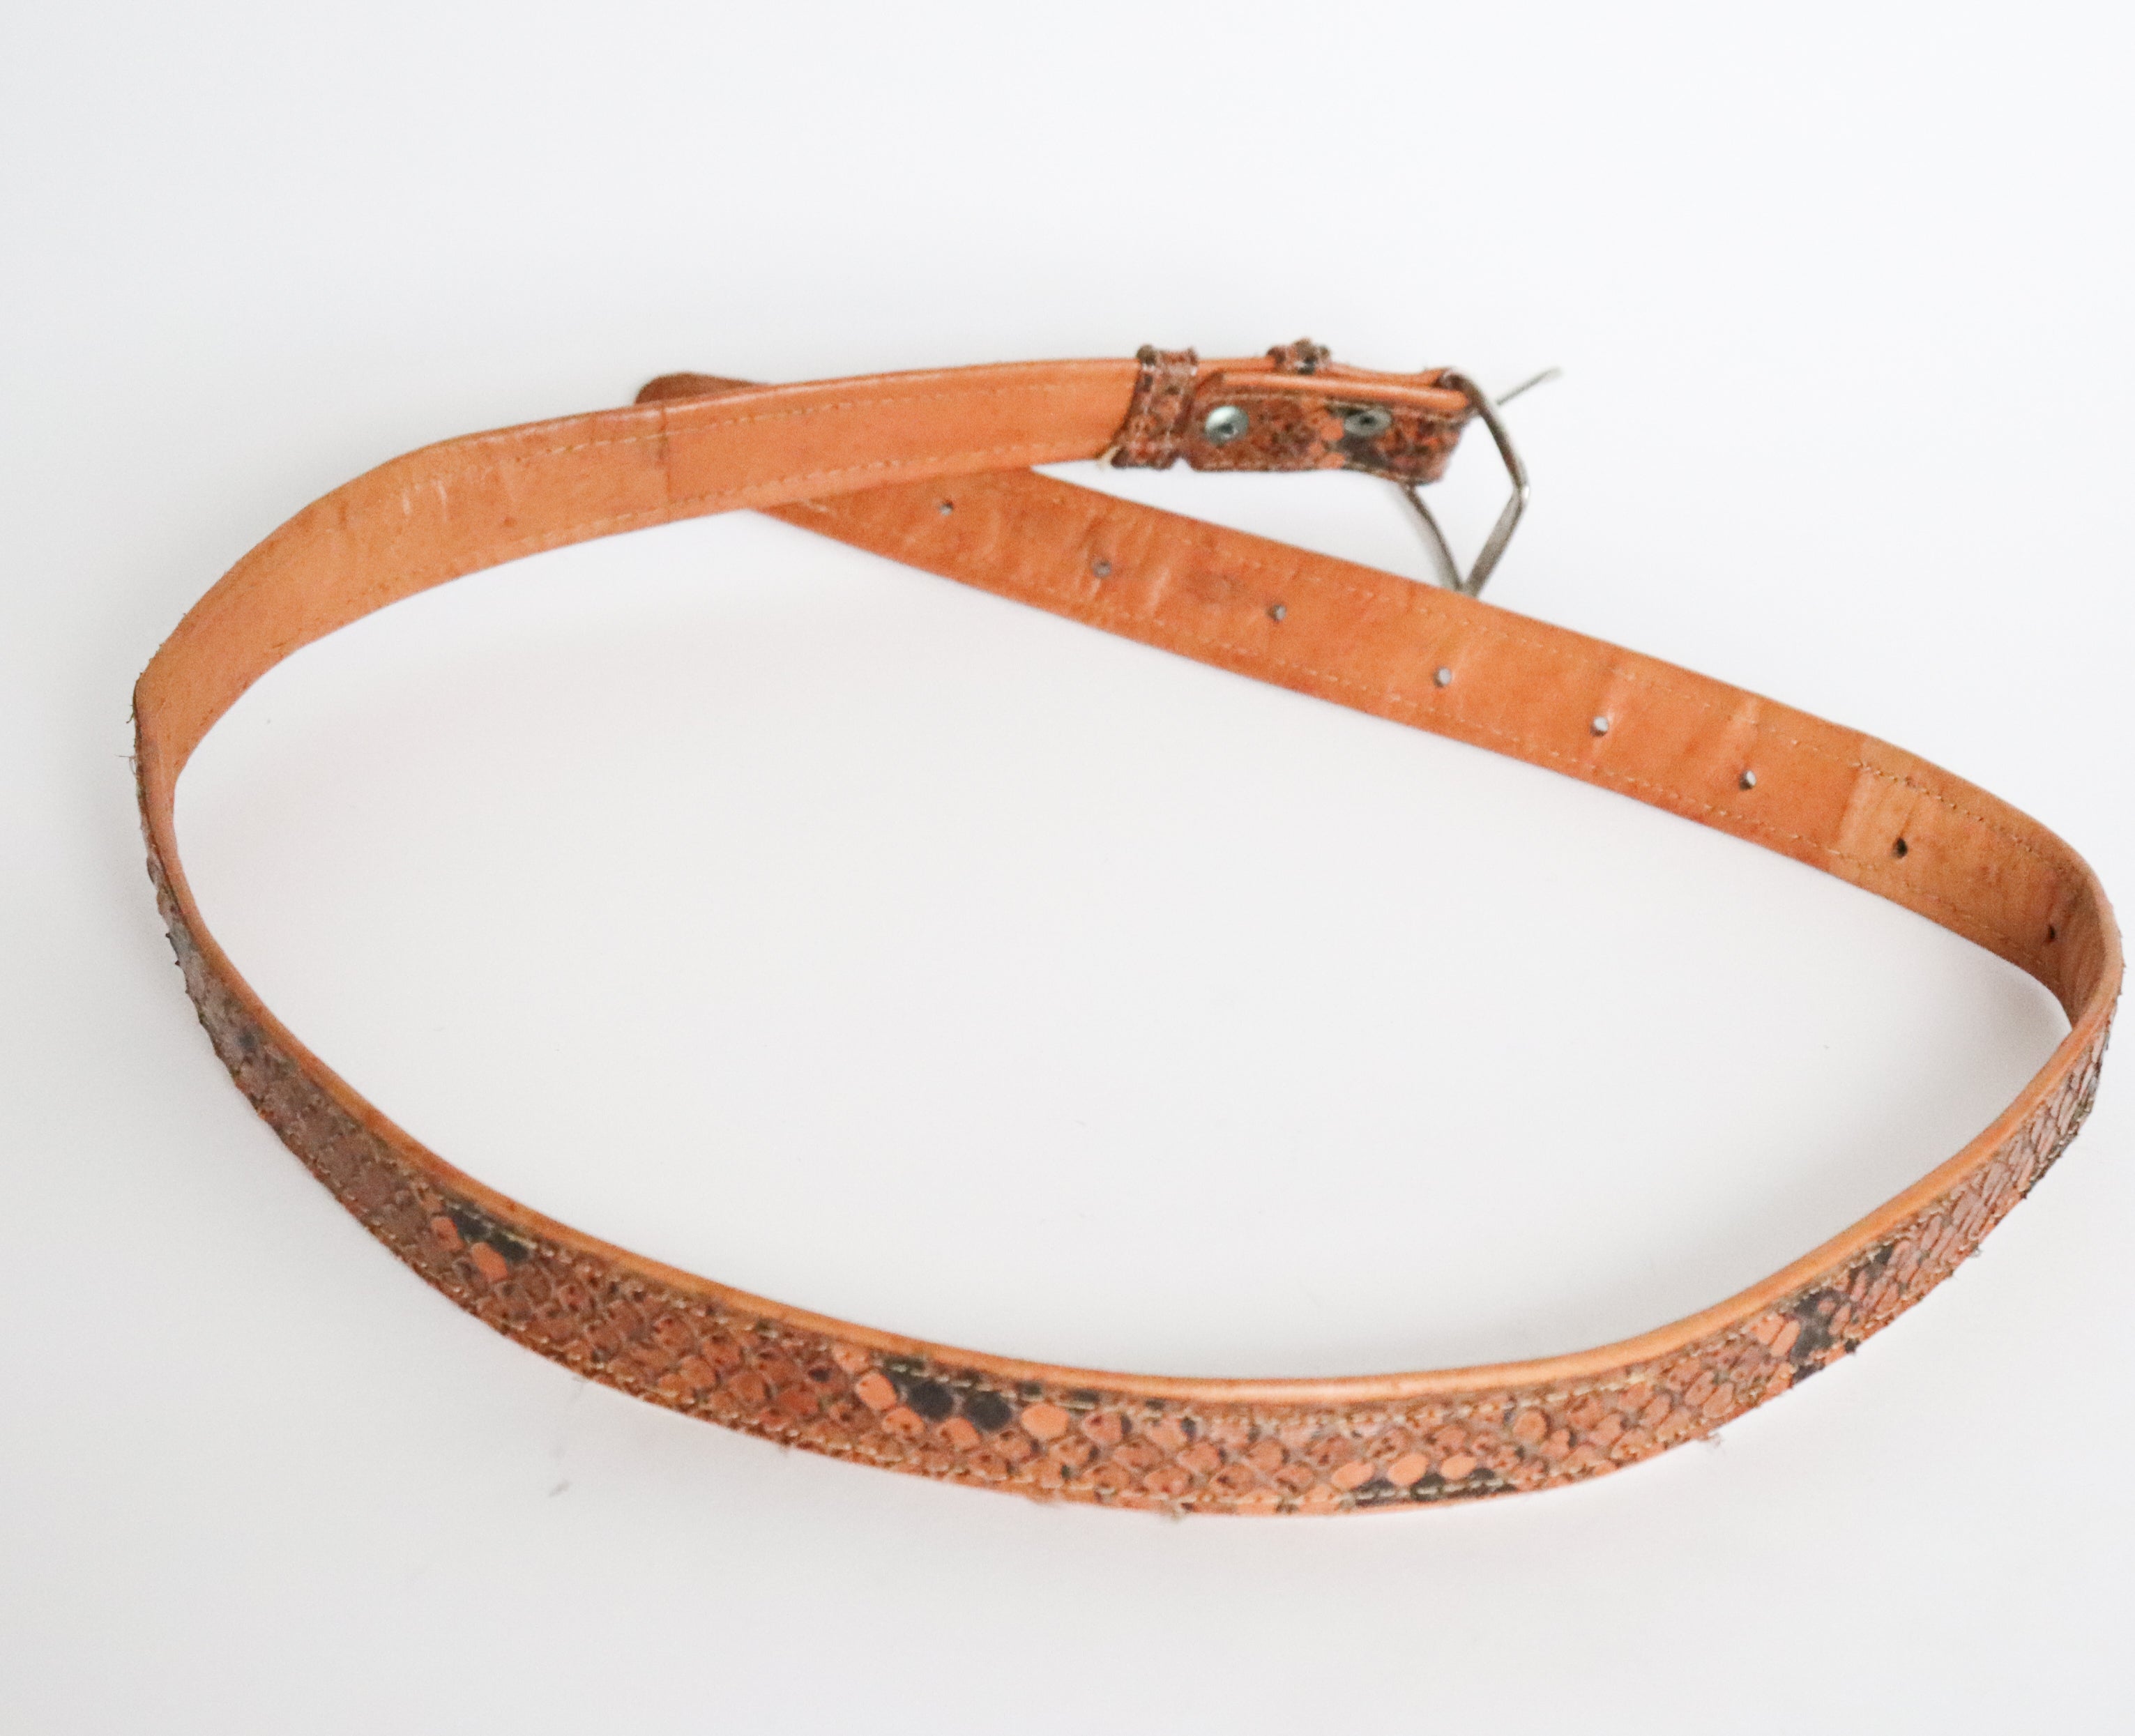 Vintage Snakeskin Belt - Tan Brown Leather   - M / L